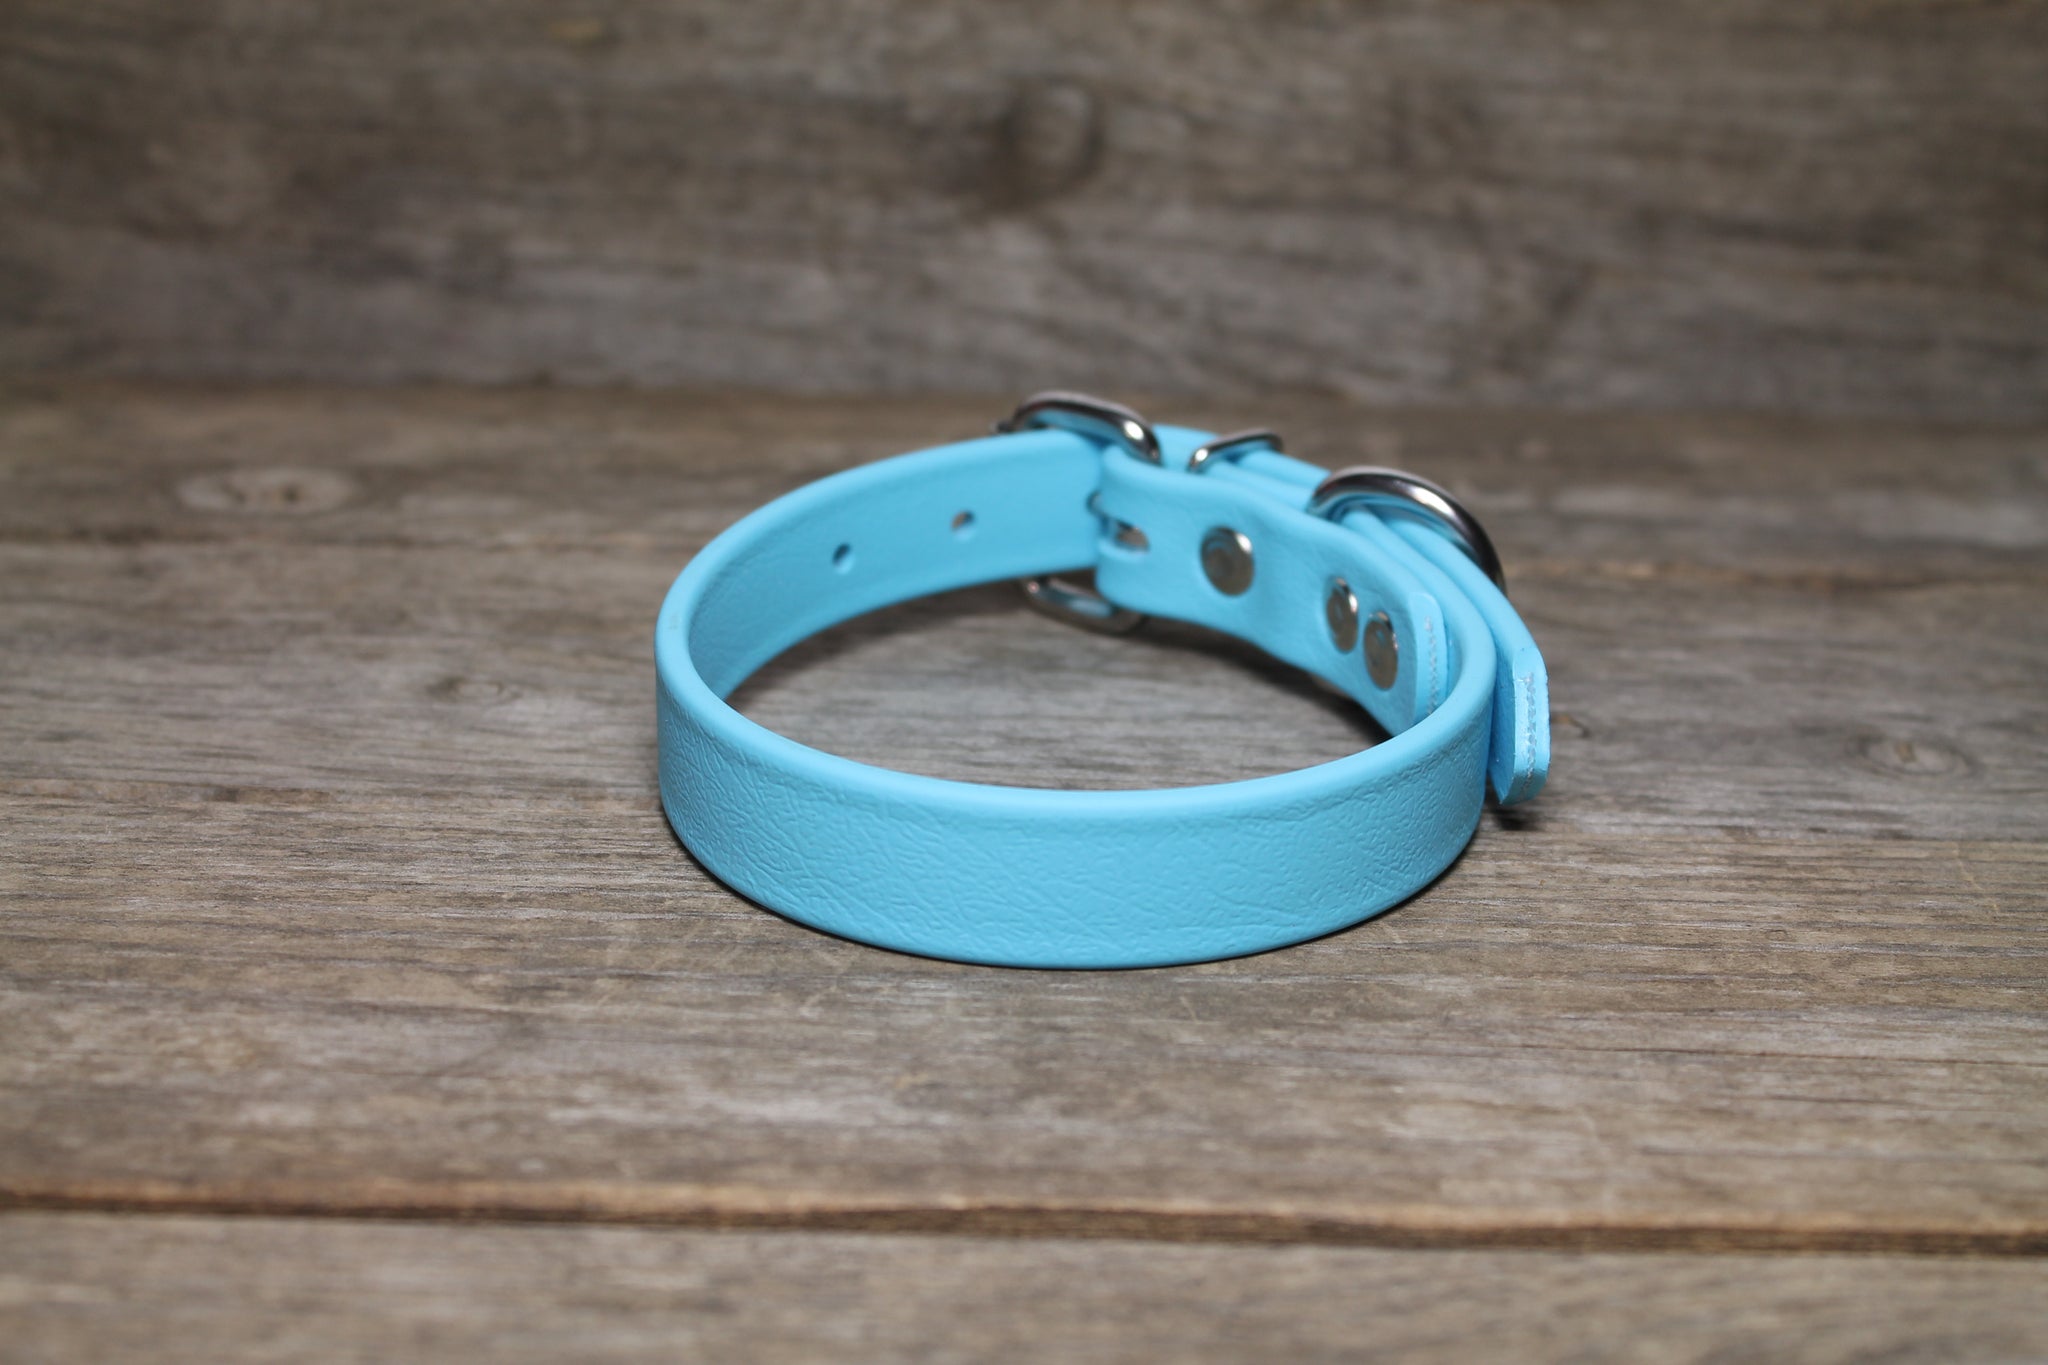 Frozen Blue Biothane Dog Collar - 3/4" (20mm) wide